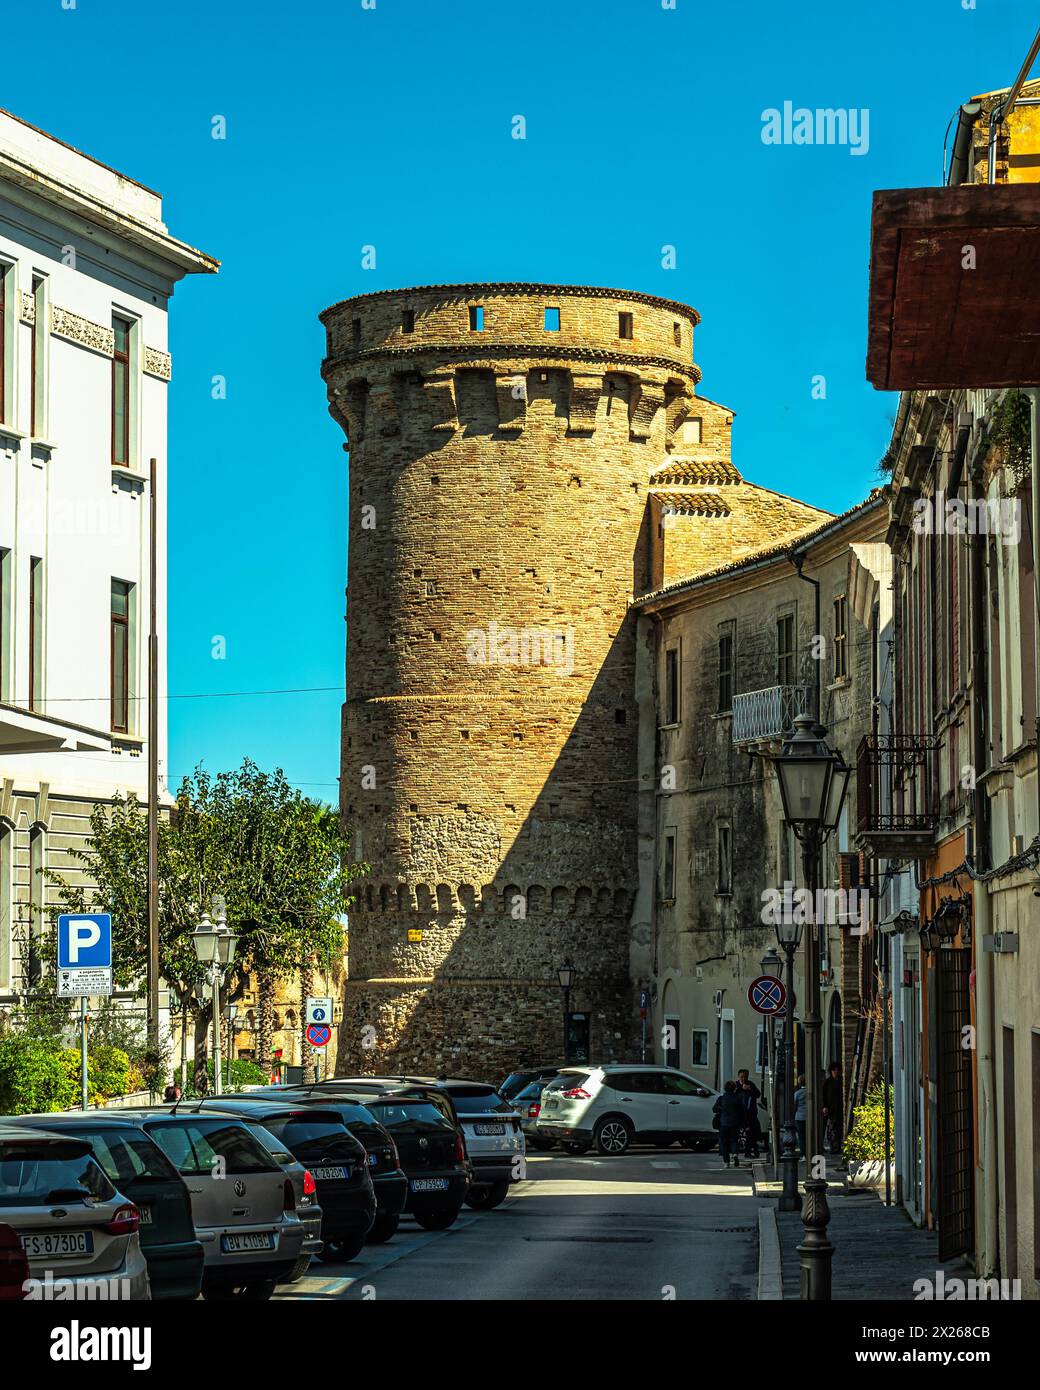 La torre Bassano è un'antica torre situata a vasto, in Piazza Gabriele Rossetti. Vasto, provincia di Chieti, Abruzzo, Italia, Europa Foto Stock